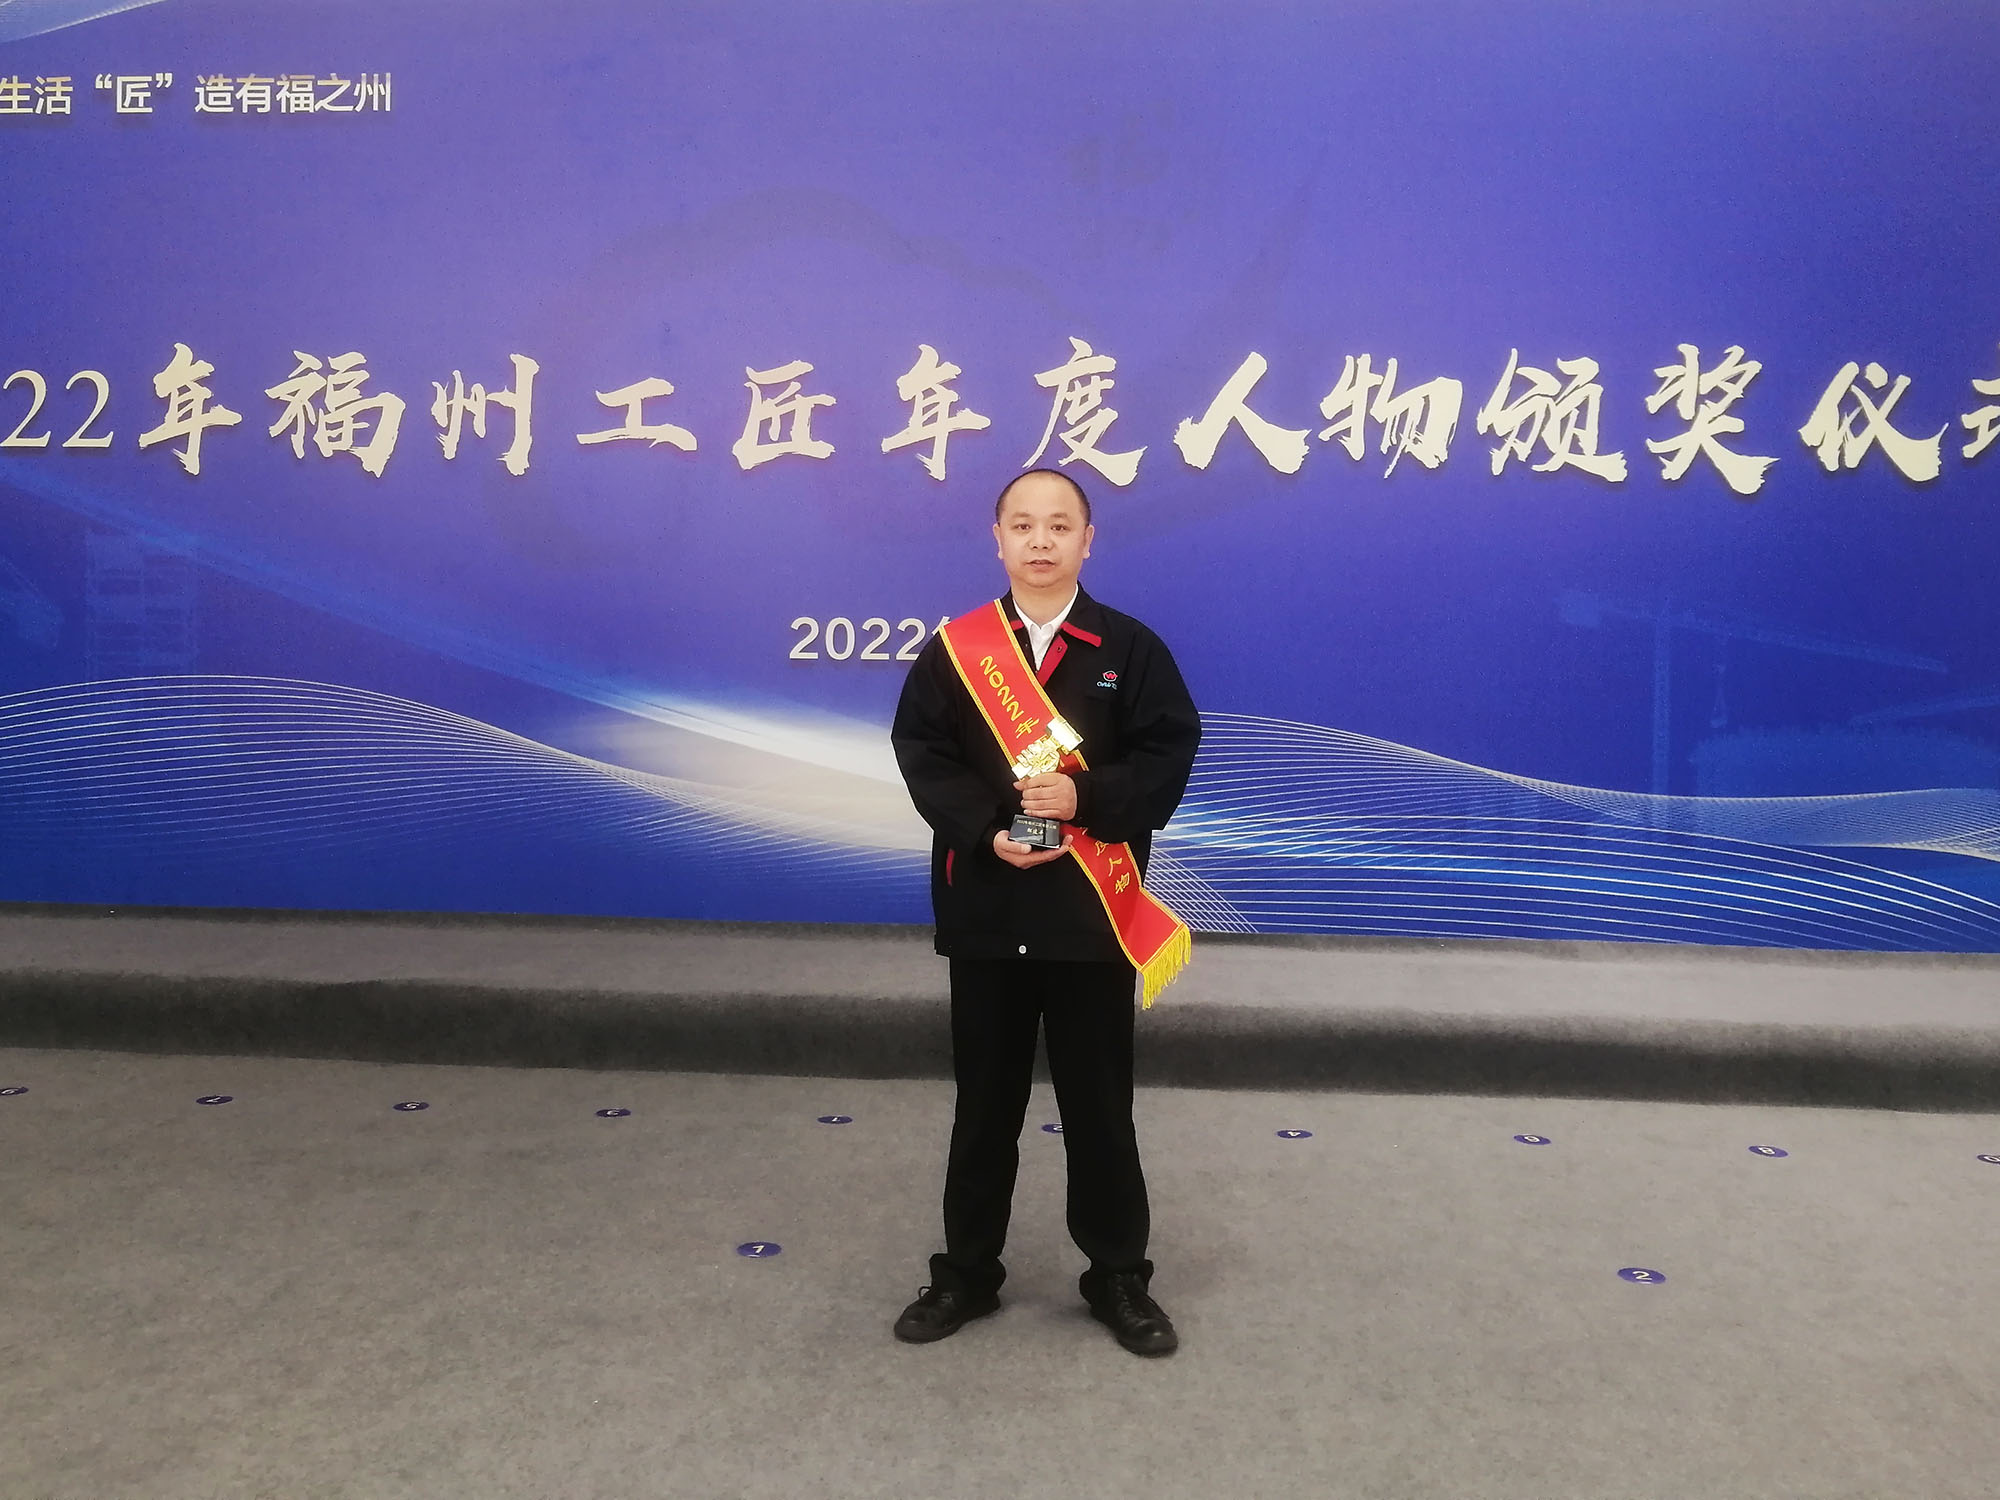 Zou Jianping, head of Fujian  WIDE PLUS Mill Group, was awarded the title of“2022 Fuzhou craftsman of the year”